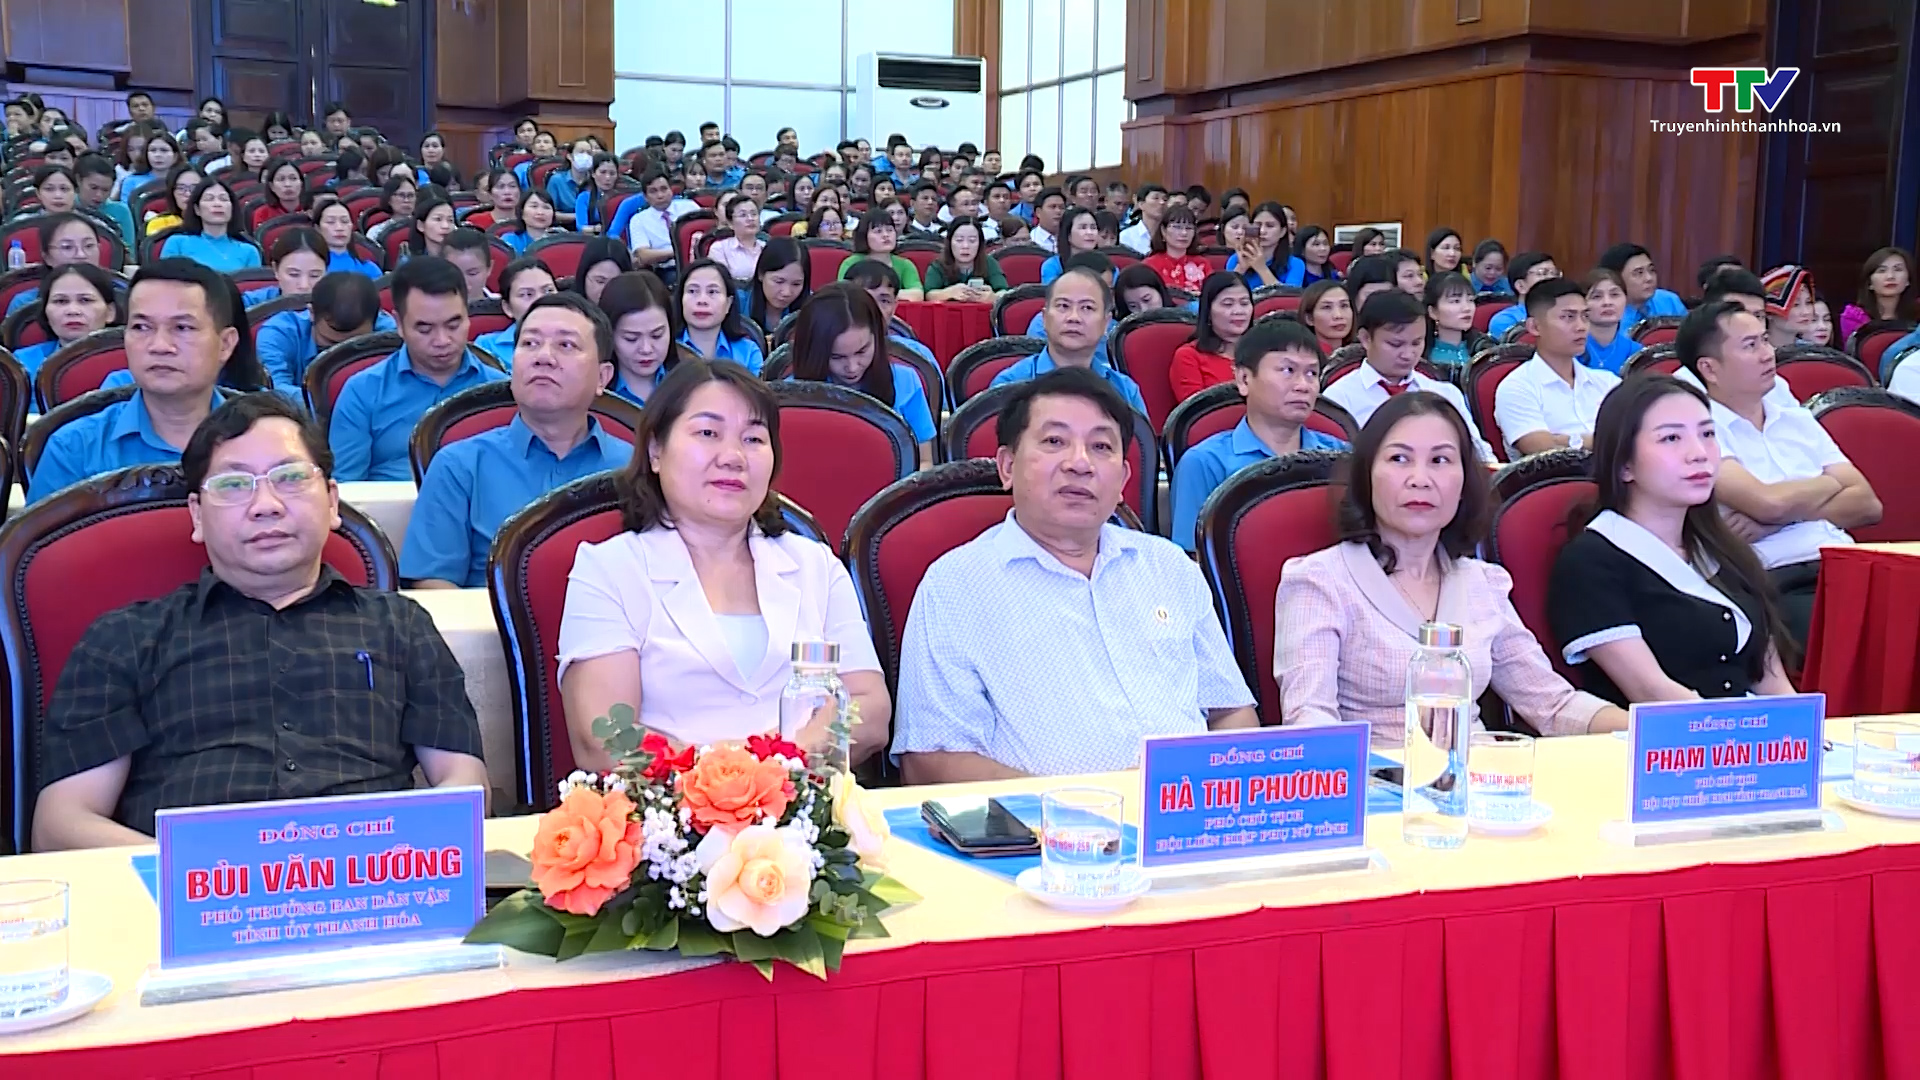 Liên đoàn lao động tỉnh Thanh Hoá tổng kết chương trình “1 triệu sáng kiến - nỗ lực vượt khó, sáng tạo, quyết tâm chiến thắng đại dịch COVID-19” - Ảnh 4.